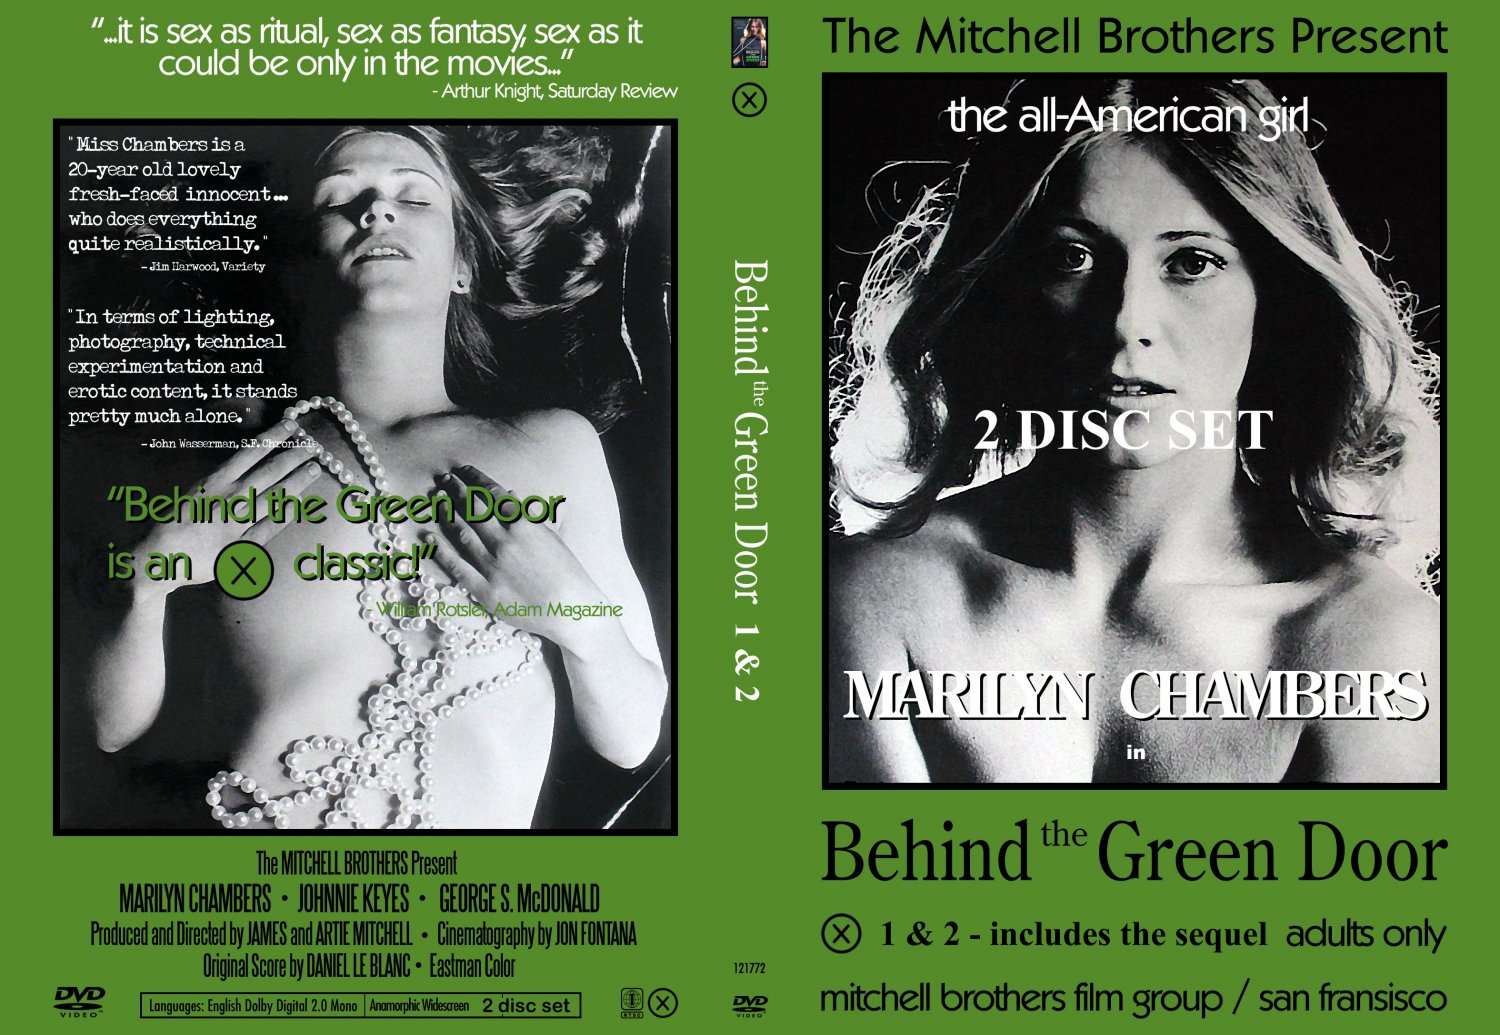 aimee wilder recommends Behind The Green Door The Sequel